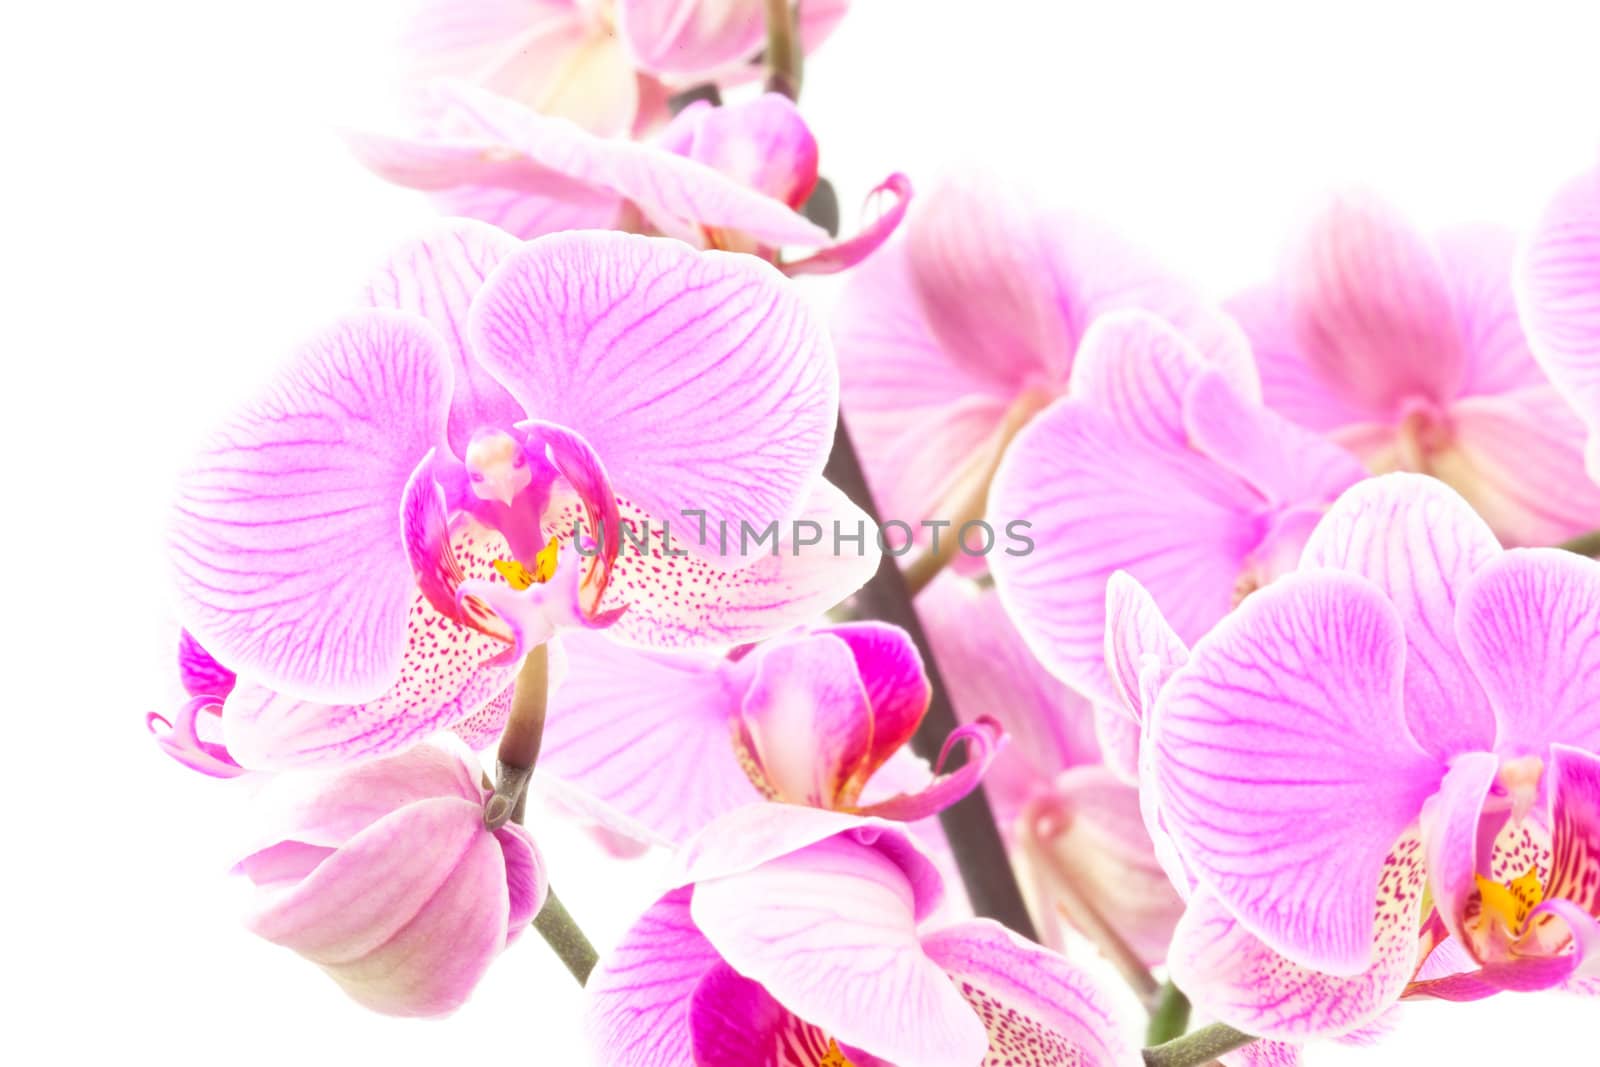 Some Orchids by dario_lo_presti